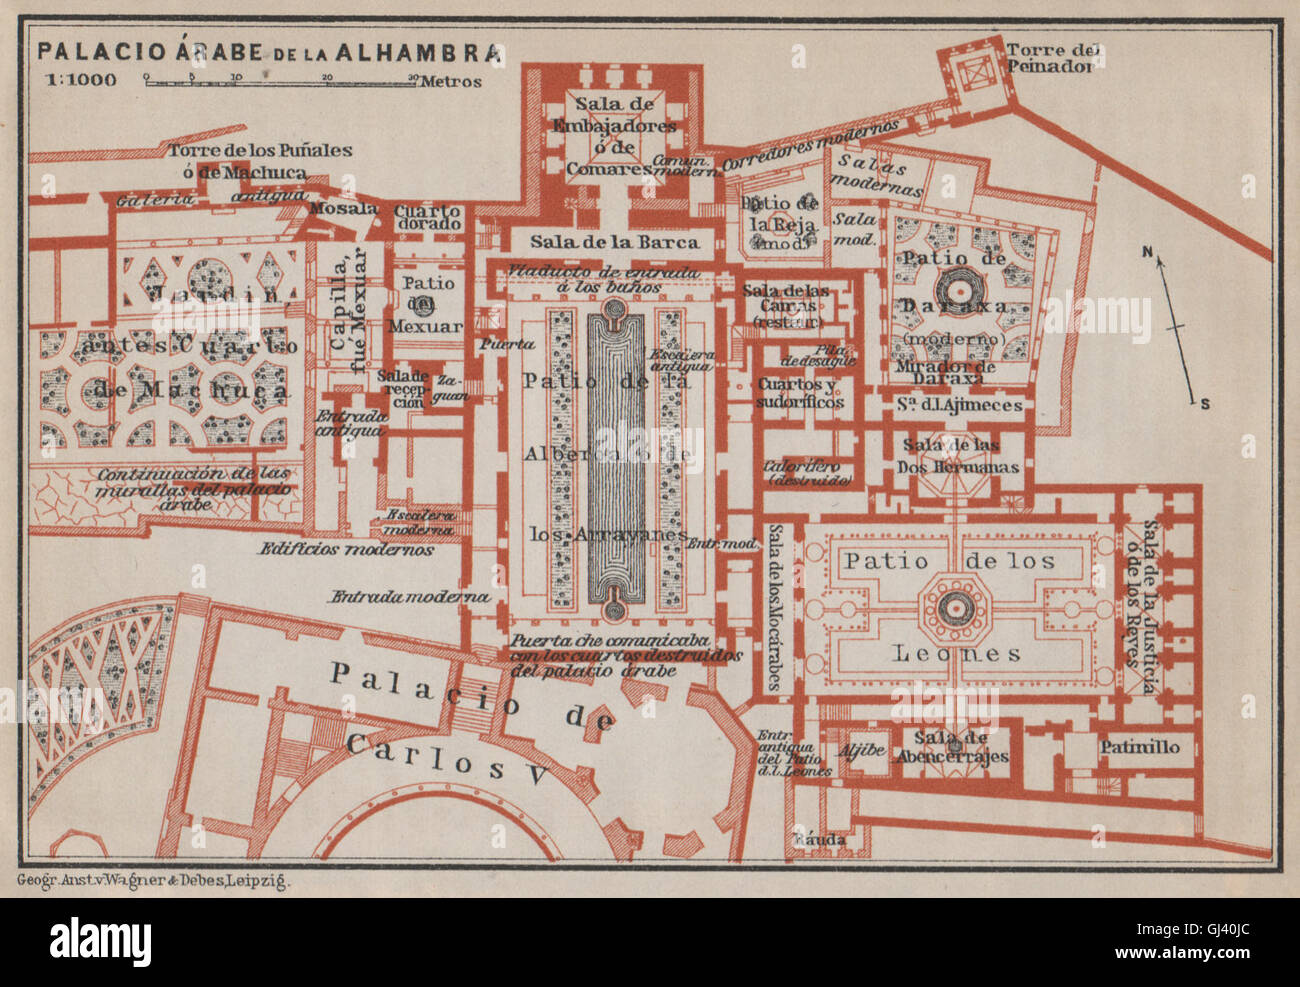 PALACIO ARABE DE LA ALHAMBRA floor plan. Granada. Spain